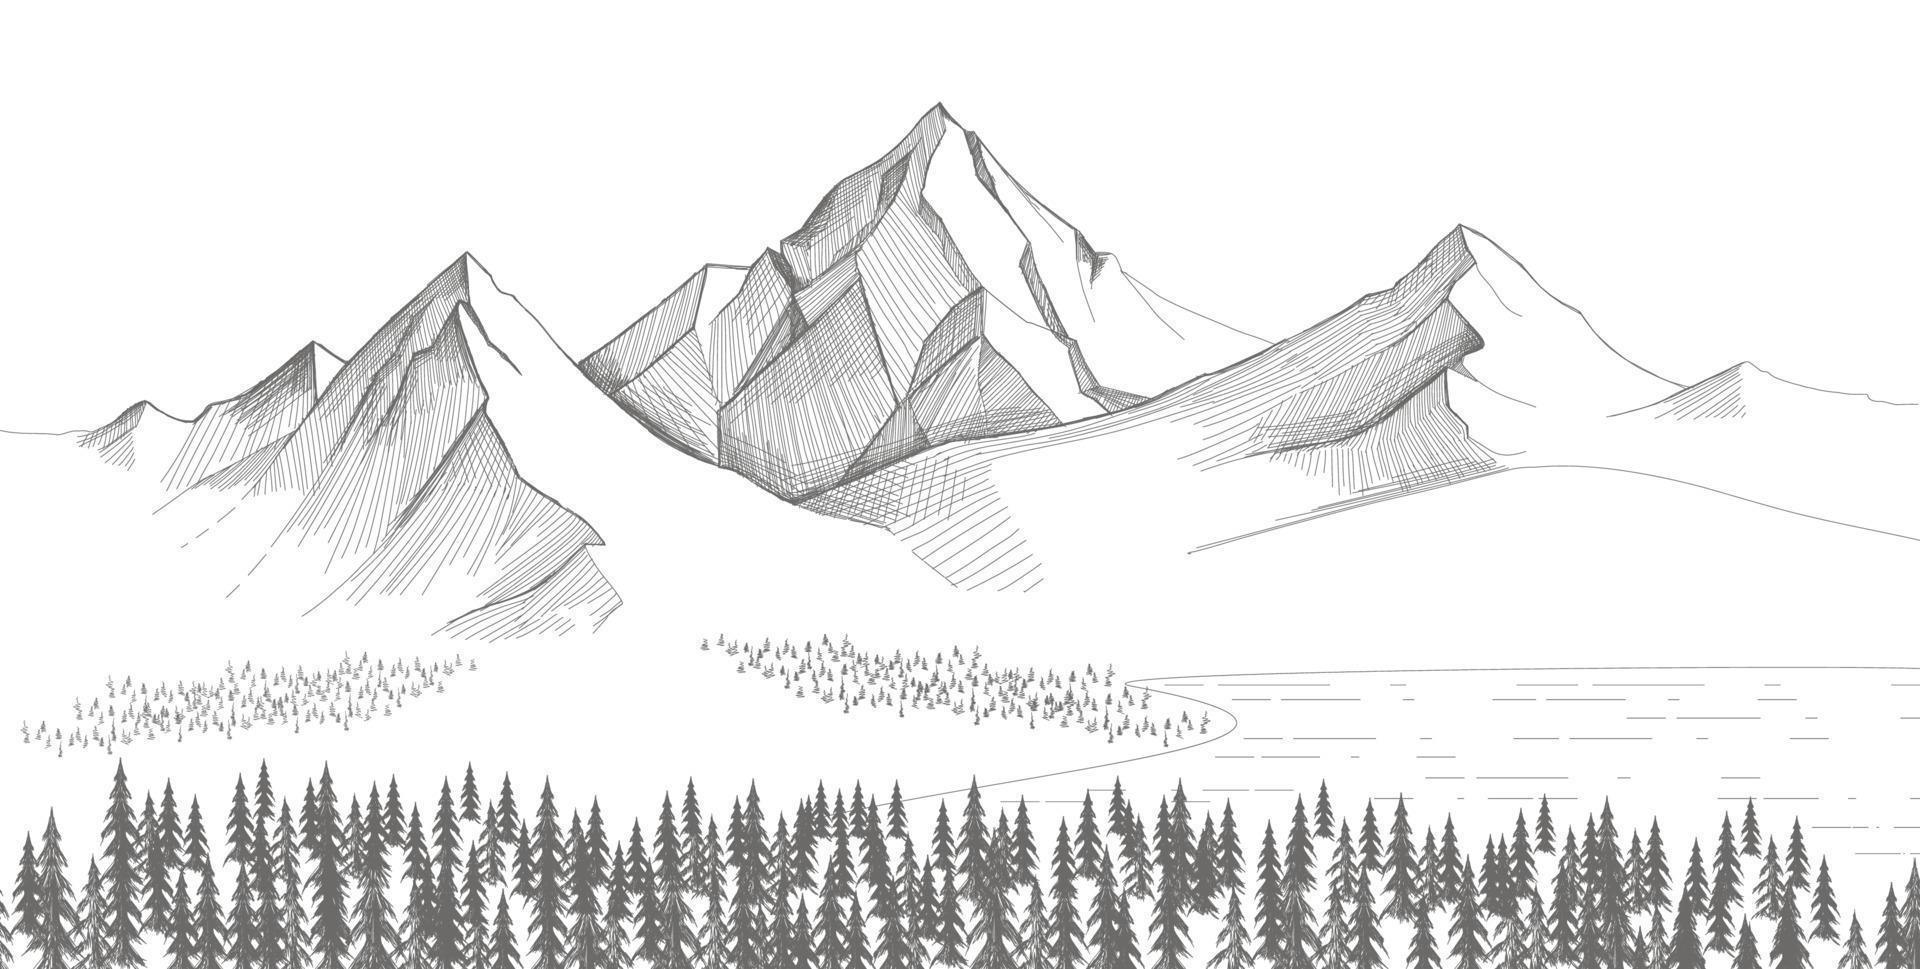 paisaje de montaña, bosquejo de pinos. ilustración vectorial dibujada a mano vector